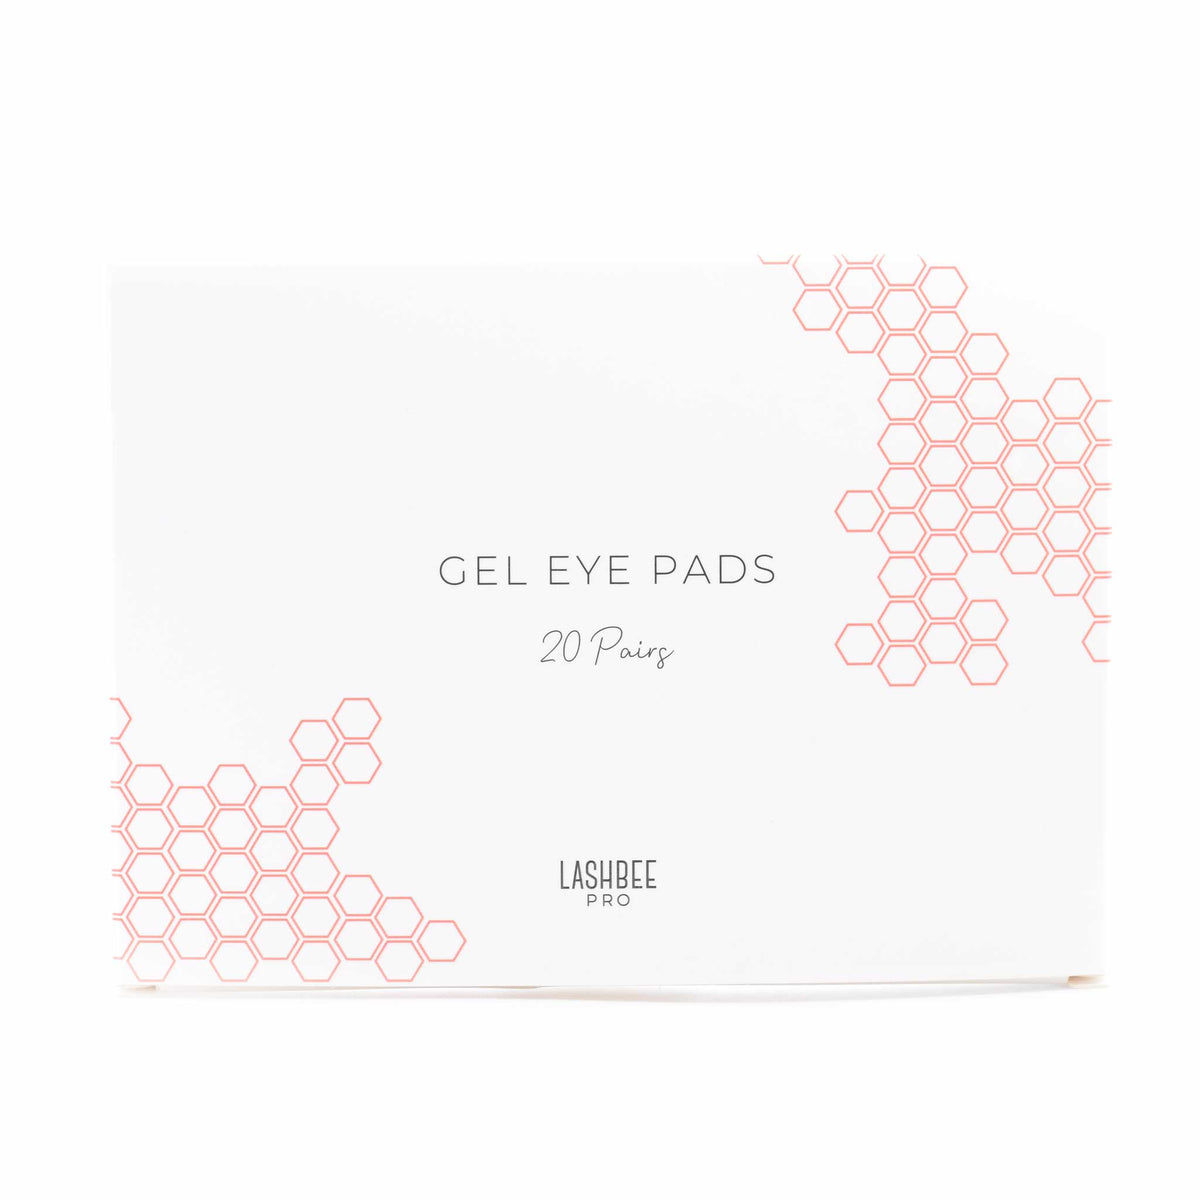 Gel Eye Pads (20 pairs)